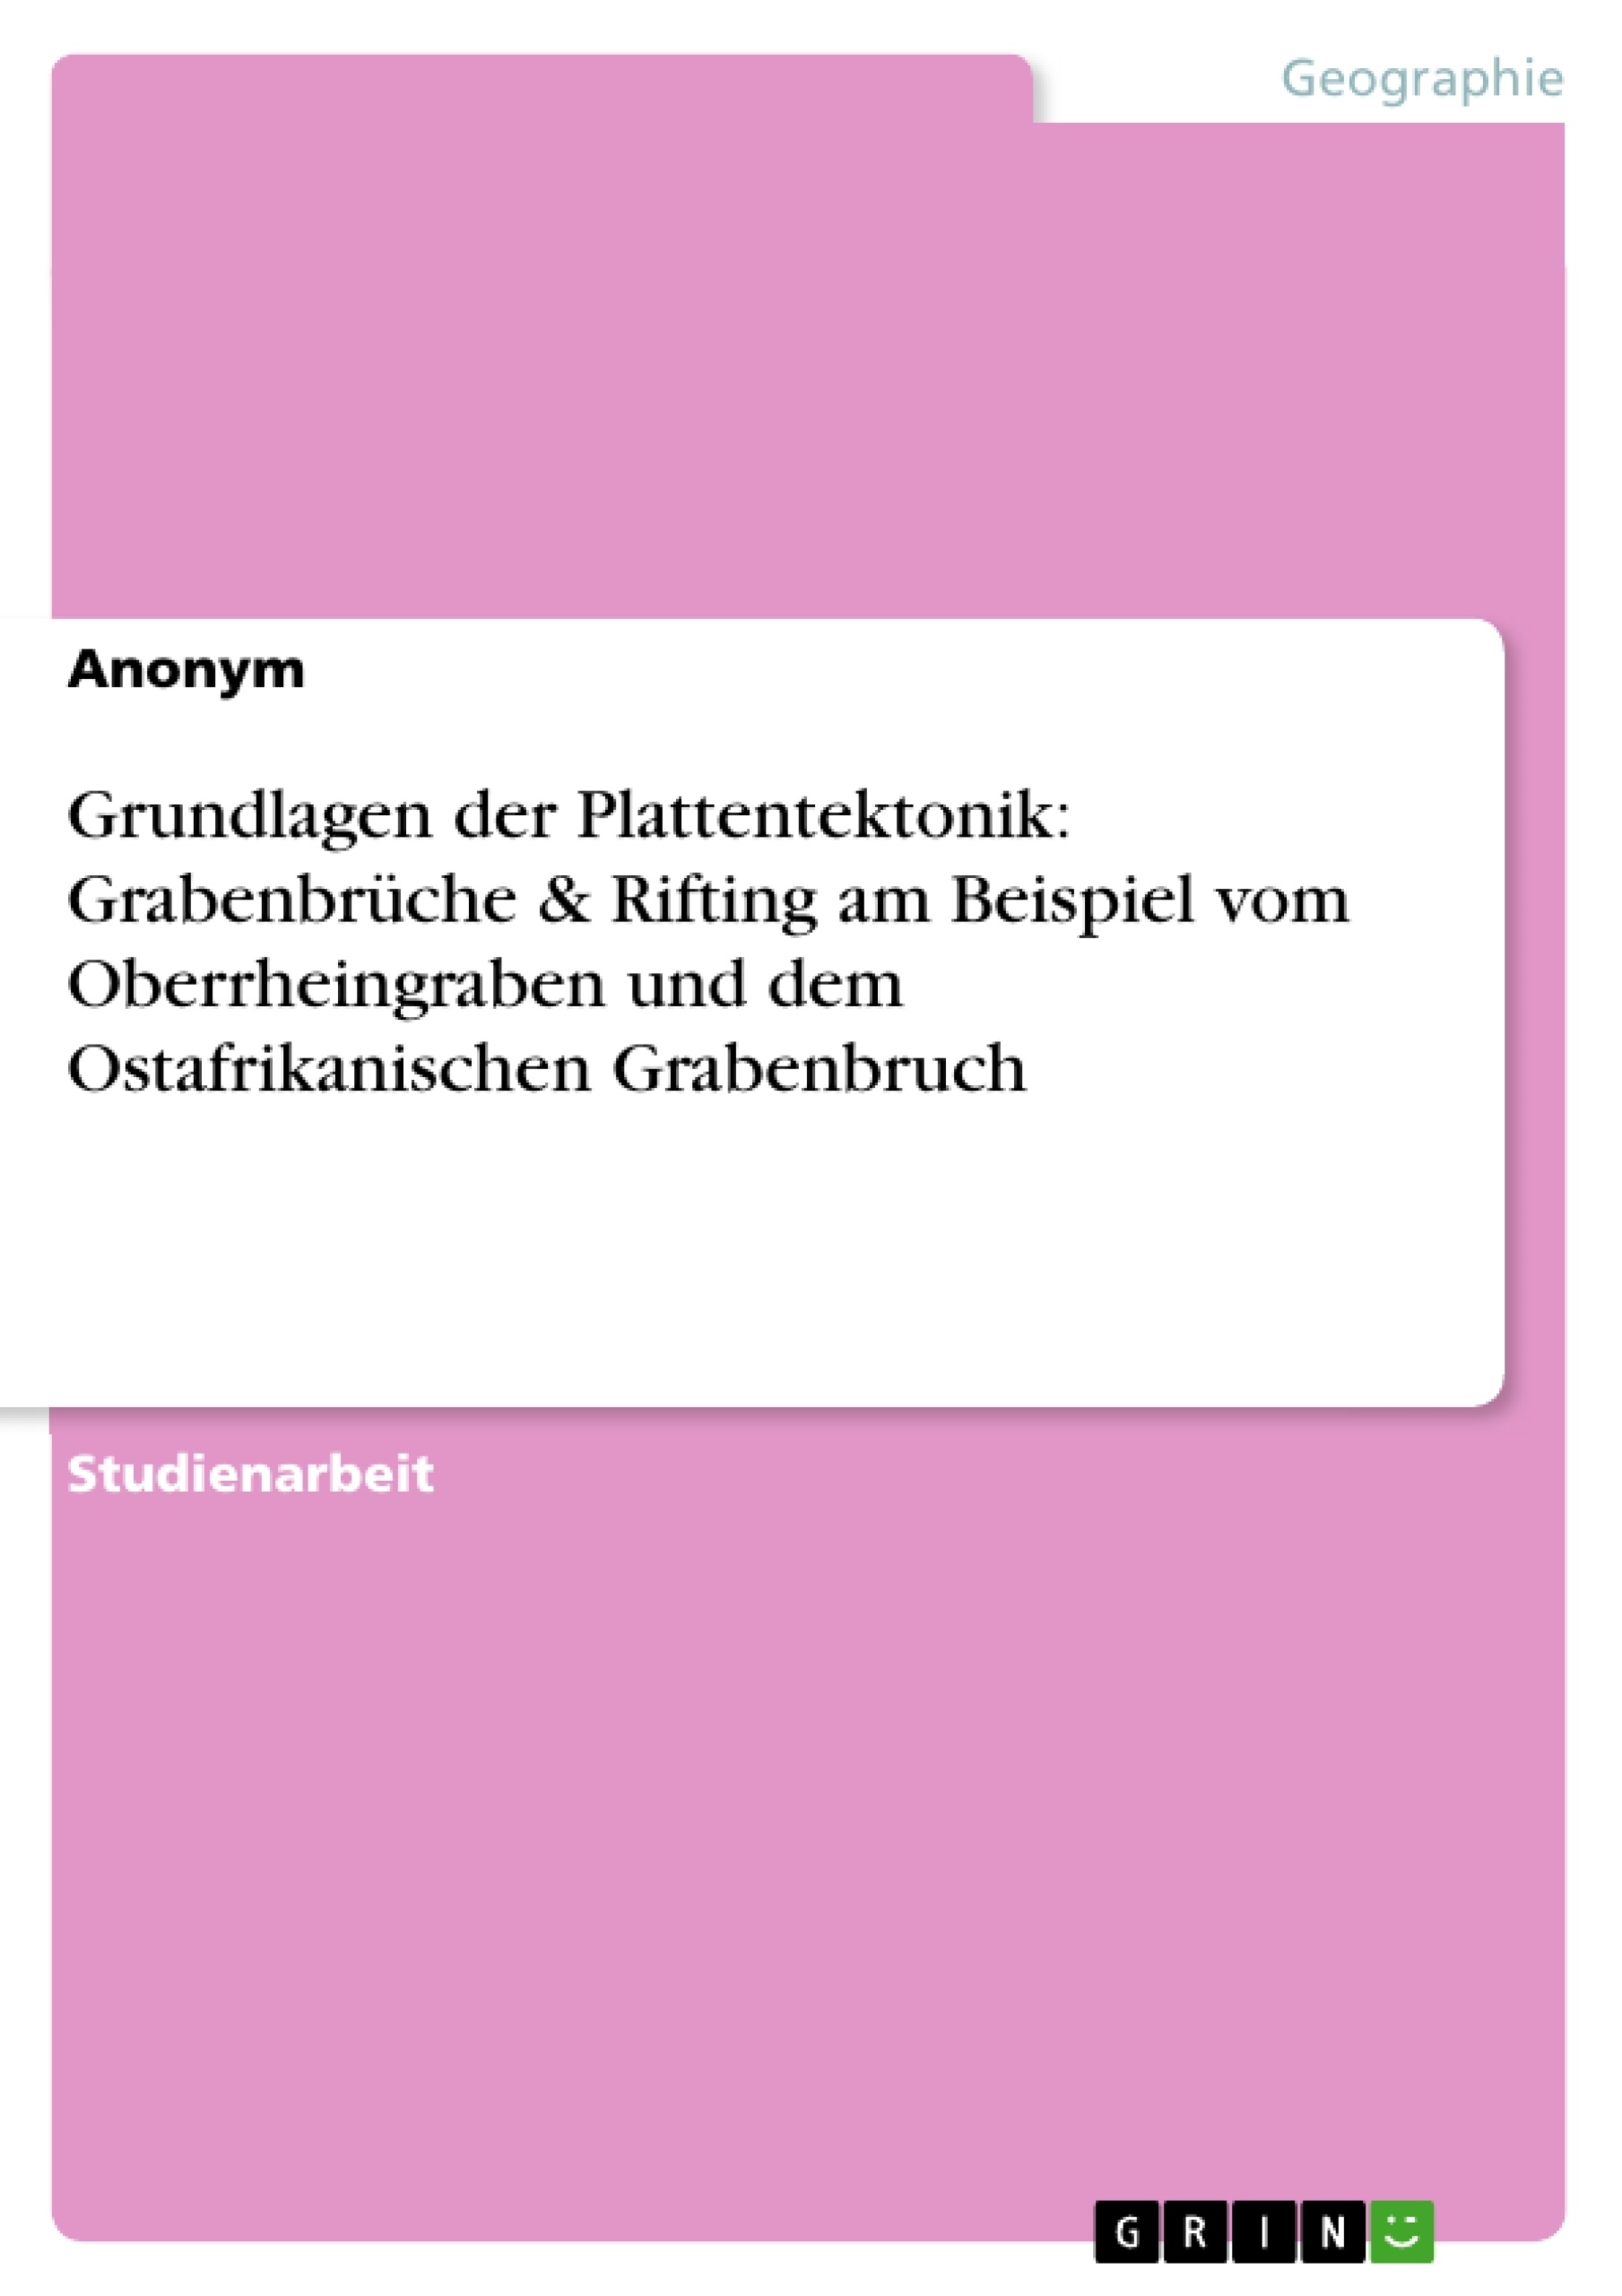 Título: Grundlagen der Plattentektonik: Grabenbrüche & Rifting am Beispiel vom Oberrheingraben und dem Ostafrikanischen Grabenbruch